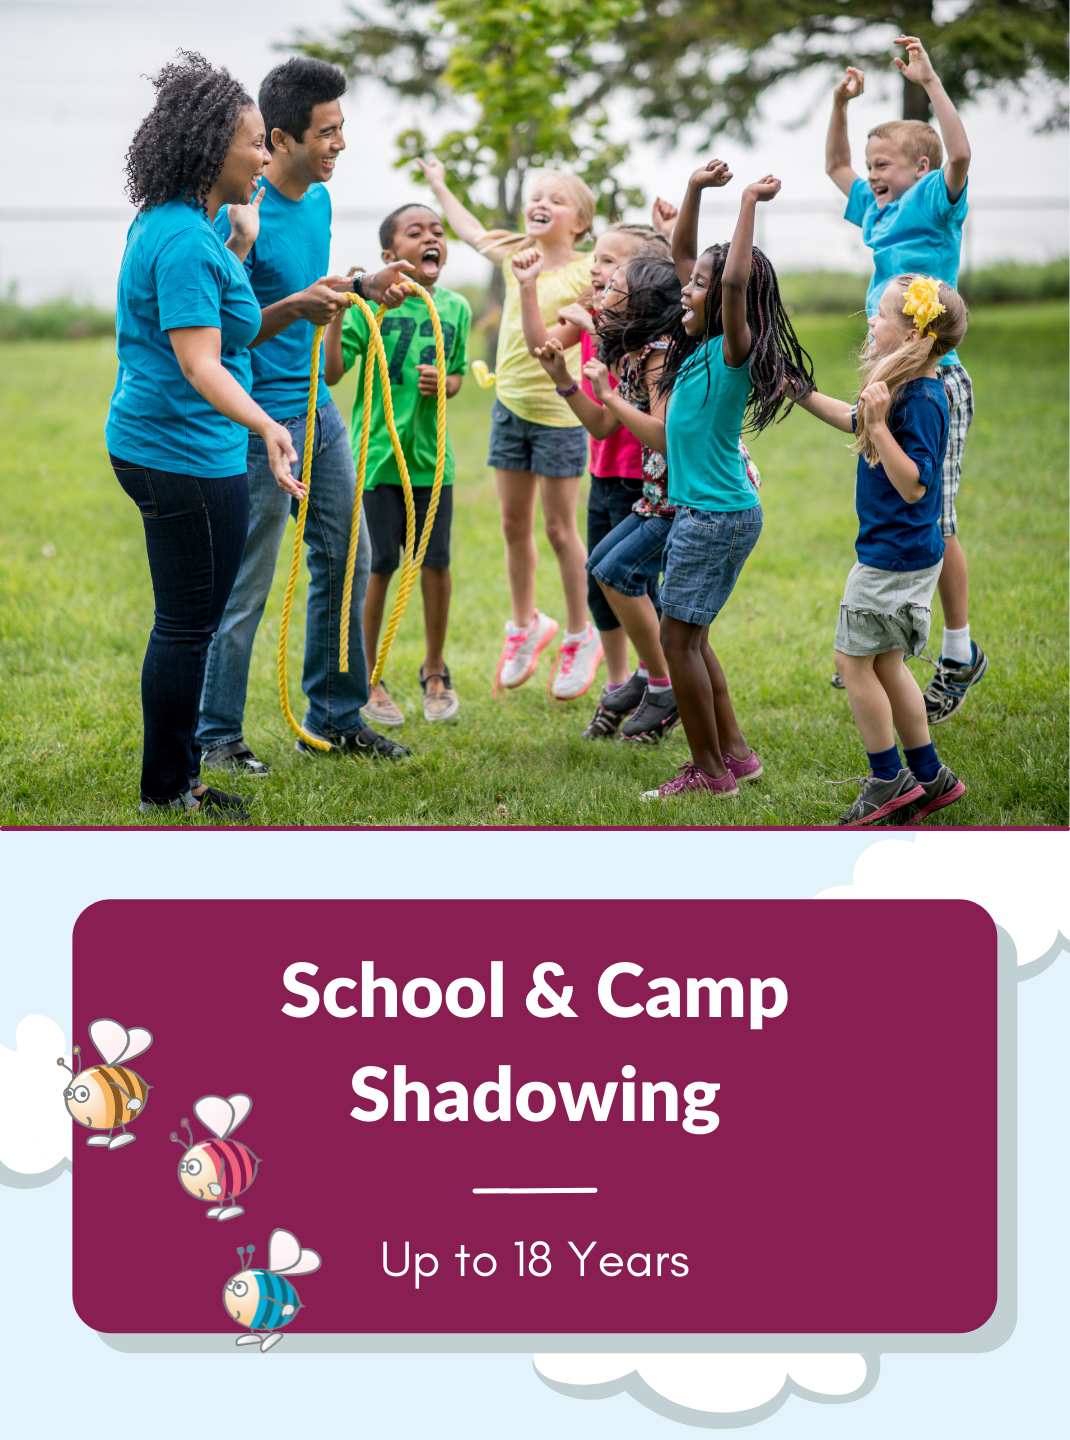 School & Camp Shadowing